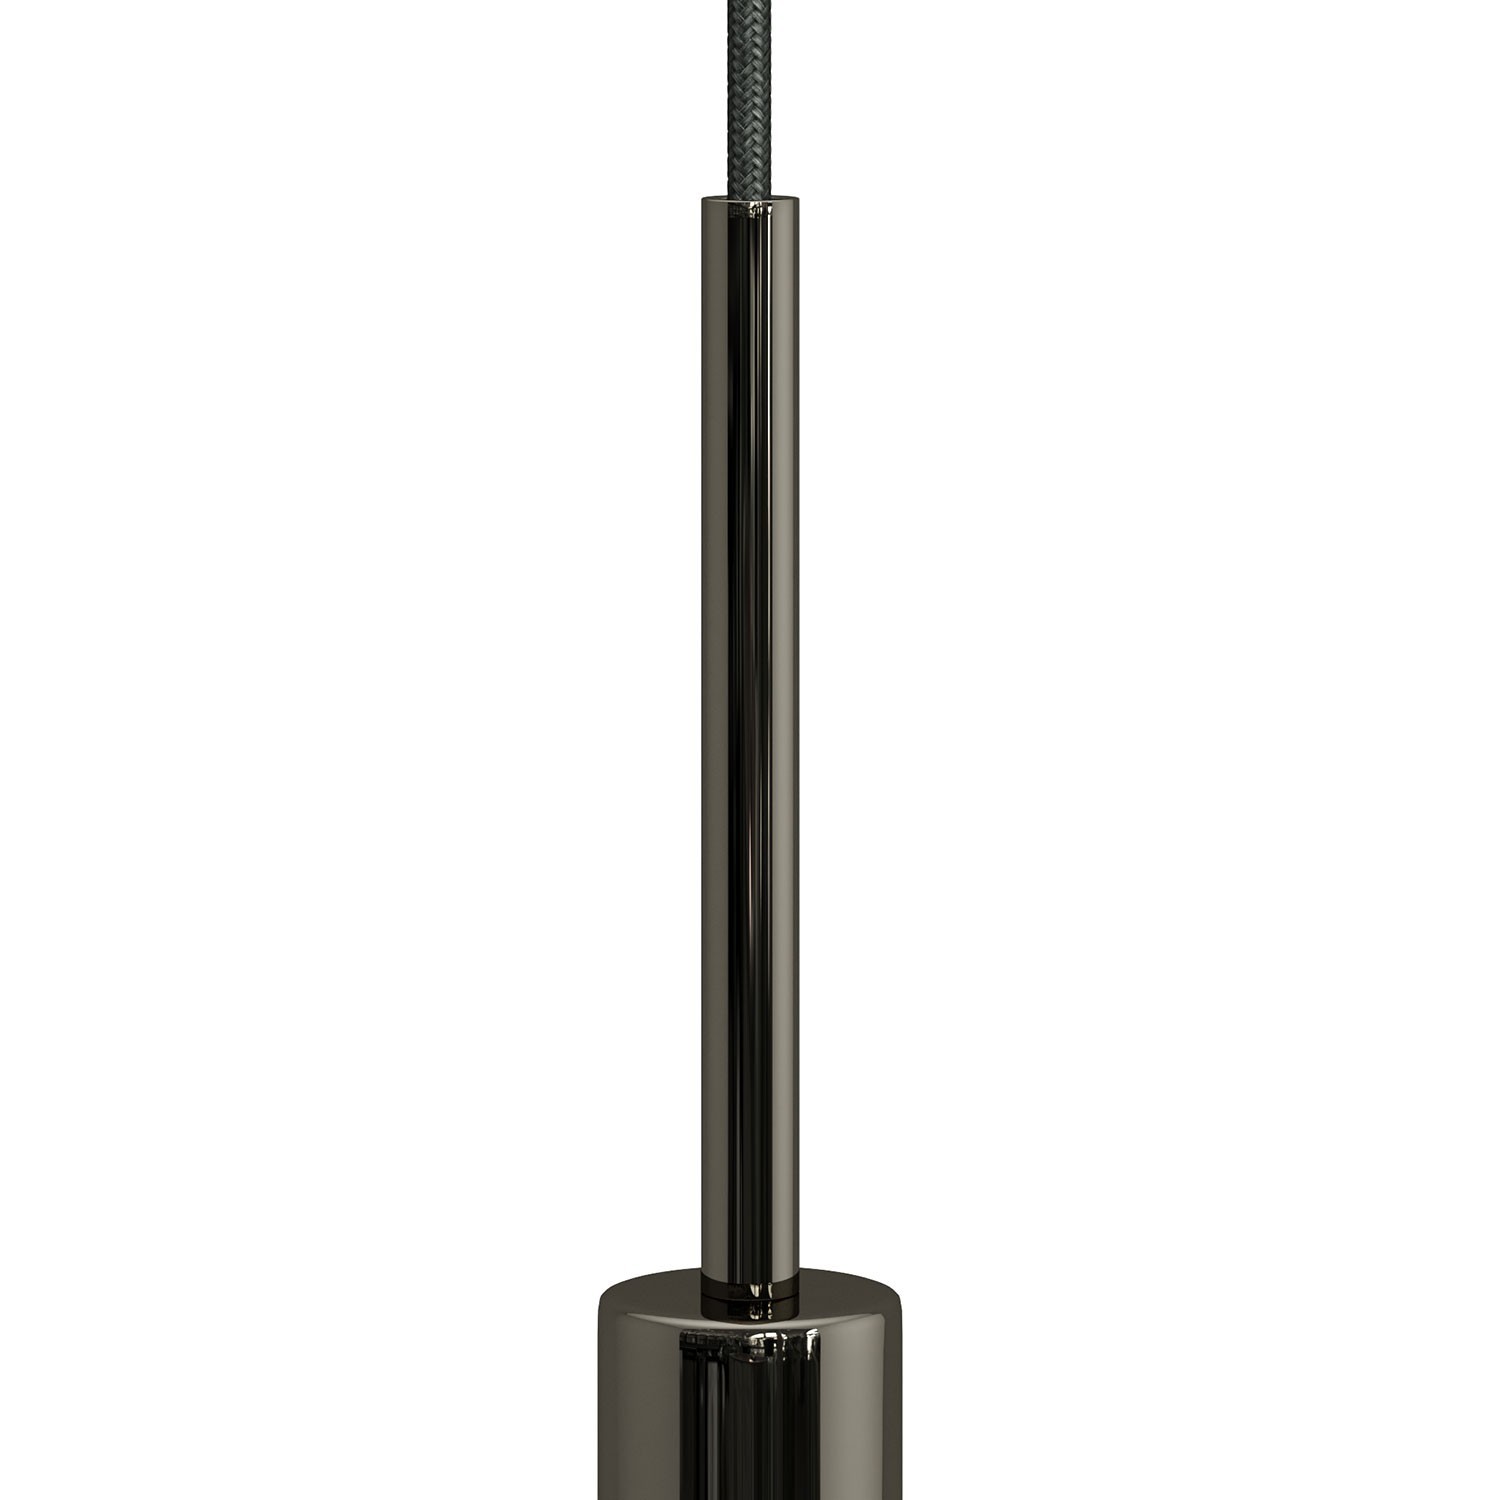 Valcová kovová káblová svorka so závitovou tyčkou, maticou a podložkou, dĺžka 15cm